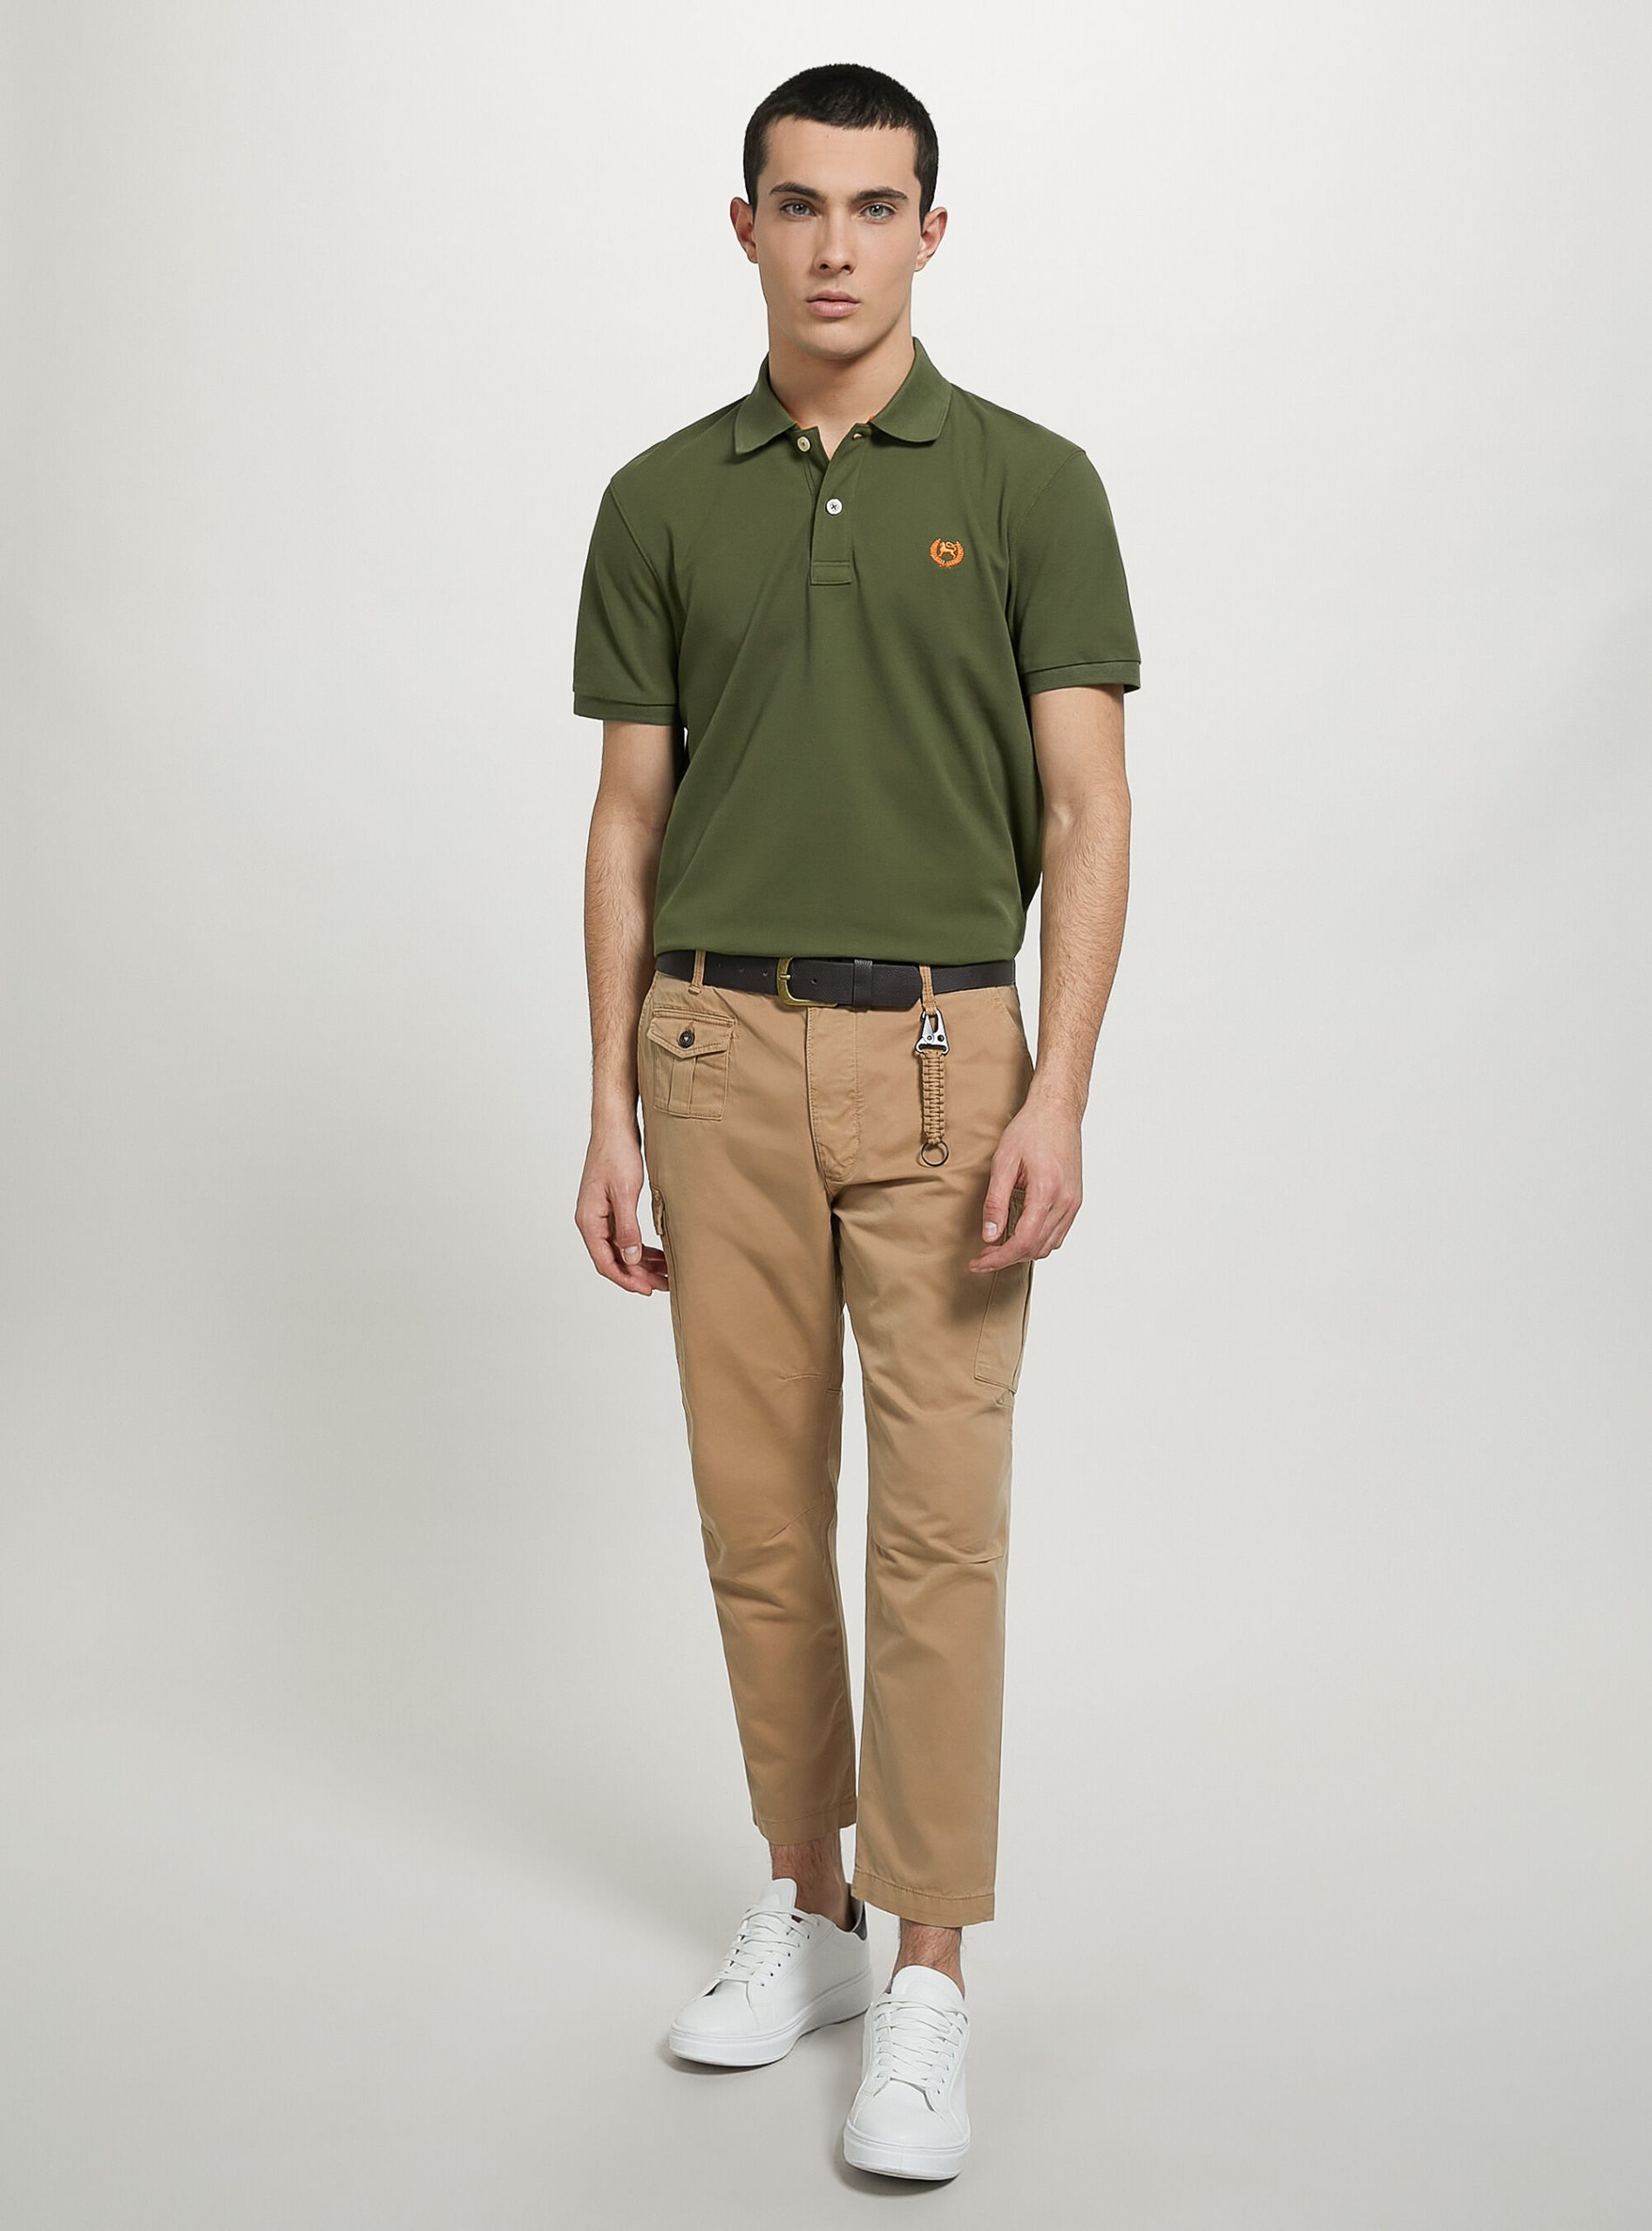 Cotton Piqué Polo Shirt With Embroidery Handhabung Alcott Männer Polo Ky2 Kaky Medium – 2